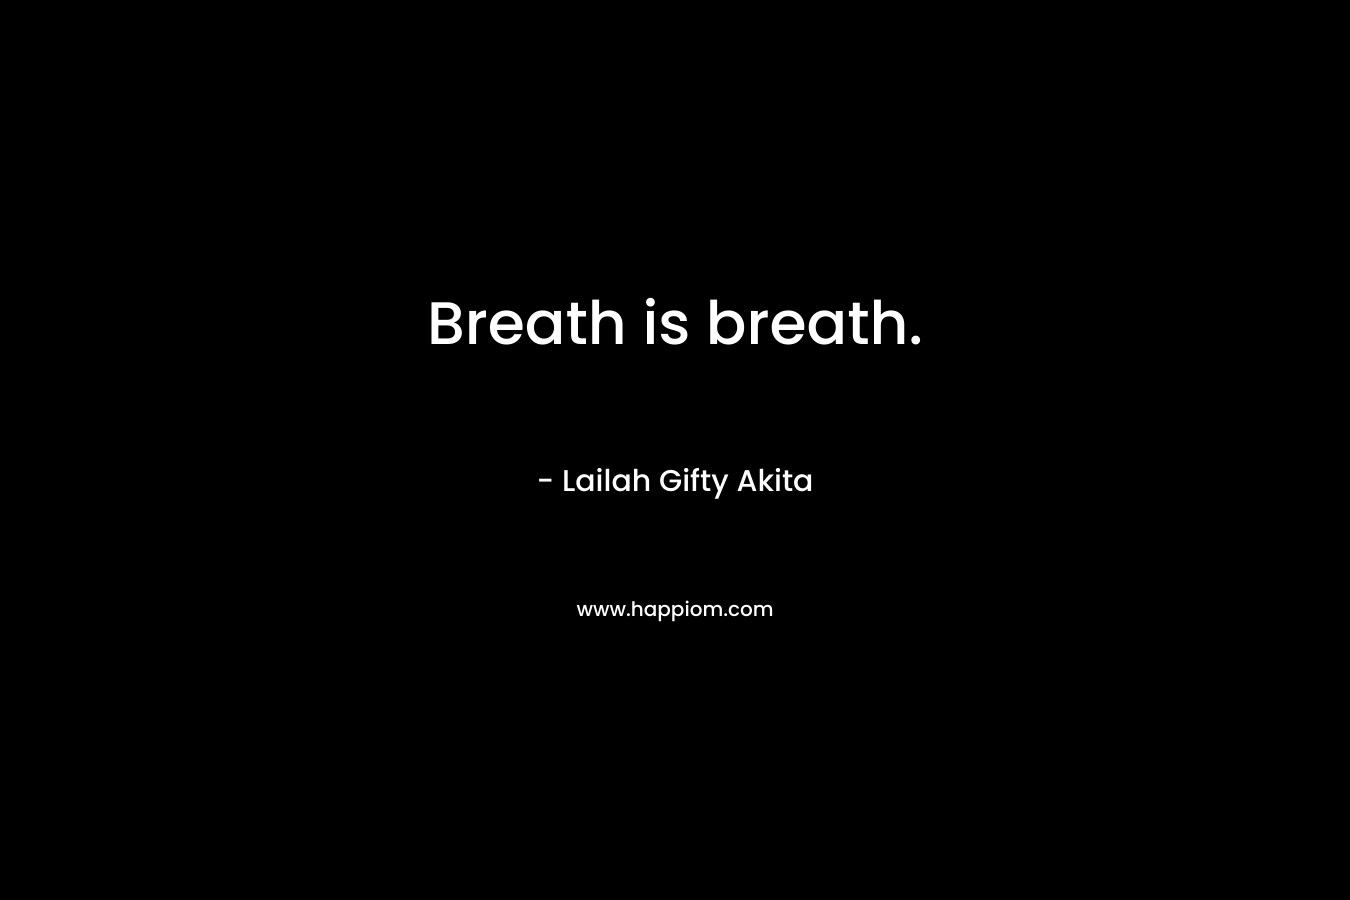 Breath is breath.